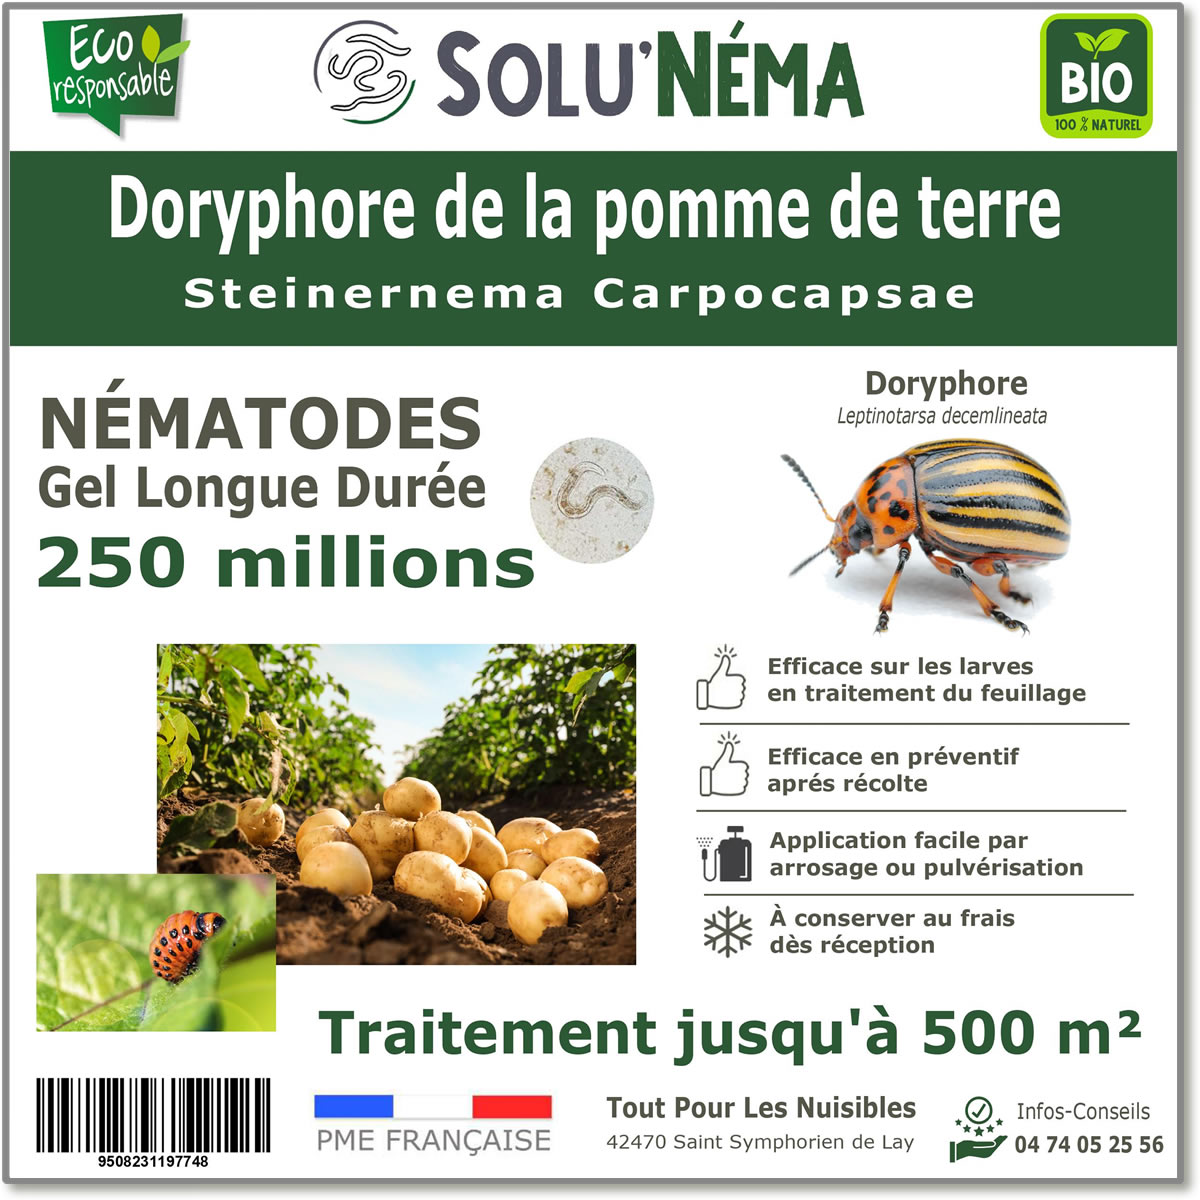 250 million nematodes to treat Colorado potato beetle larvae